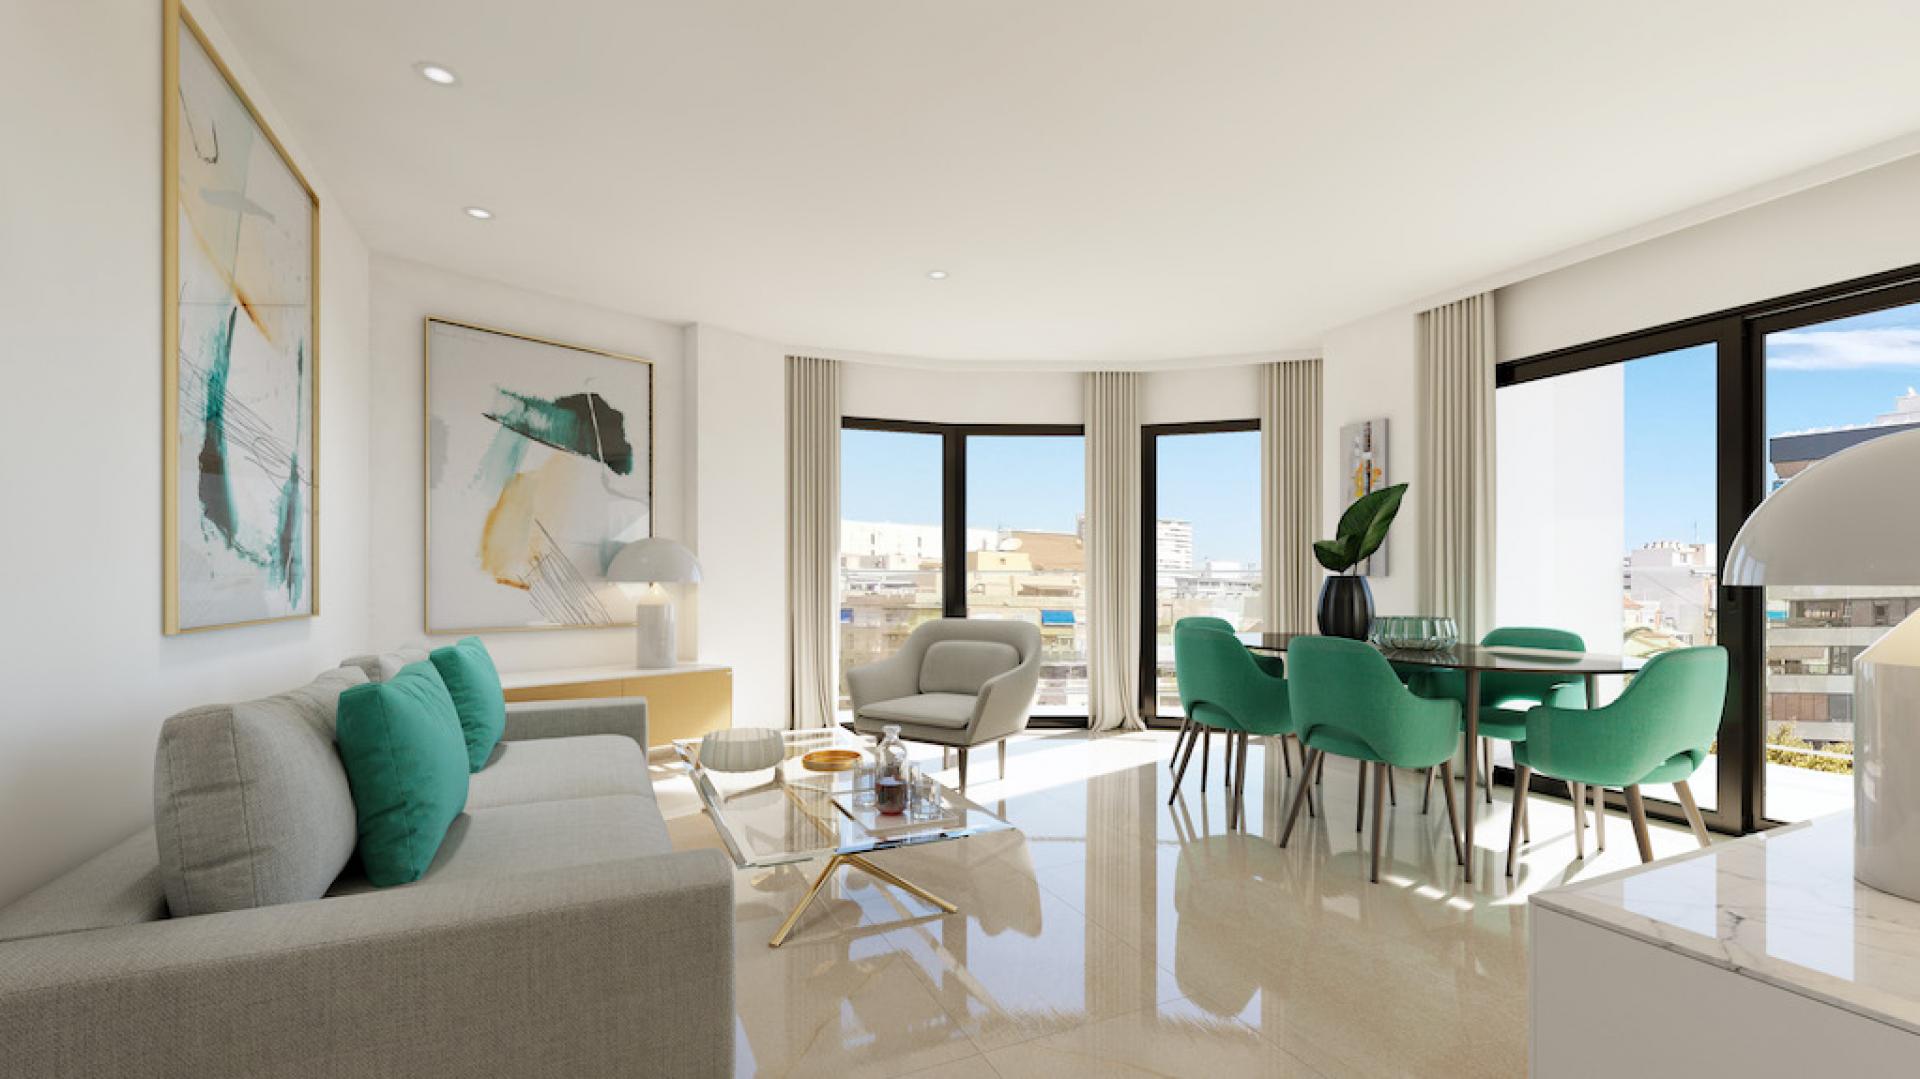 3 Slaapkamer Appartement met terras in Alicante - Nieuwbouw in Medvilla Spanje